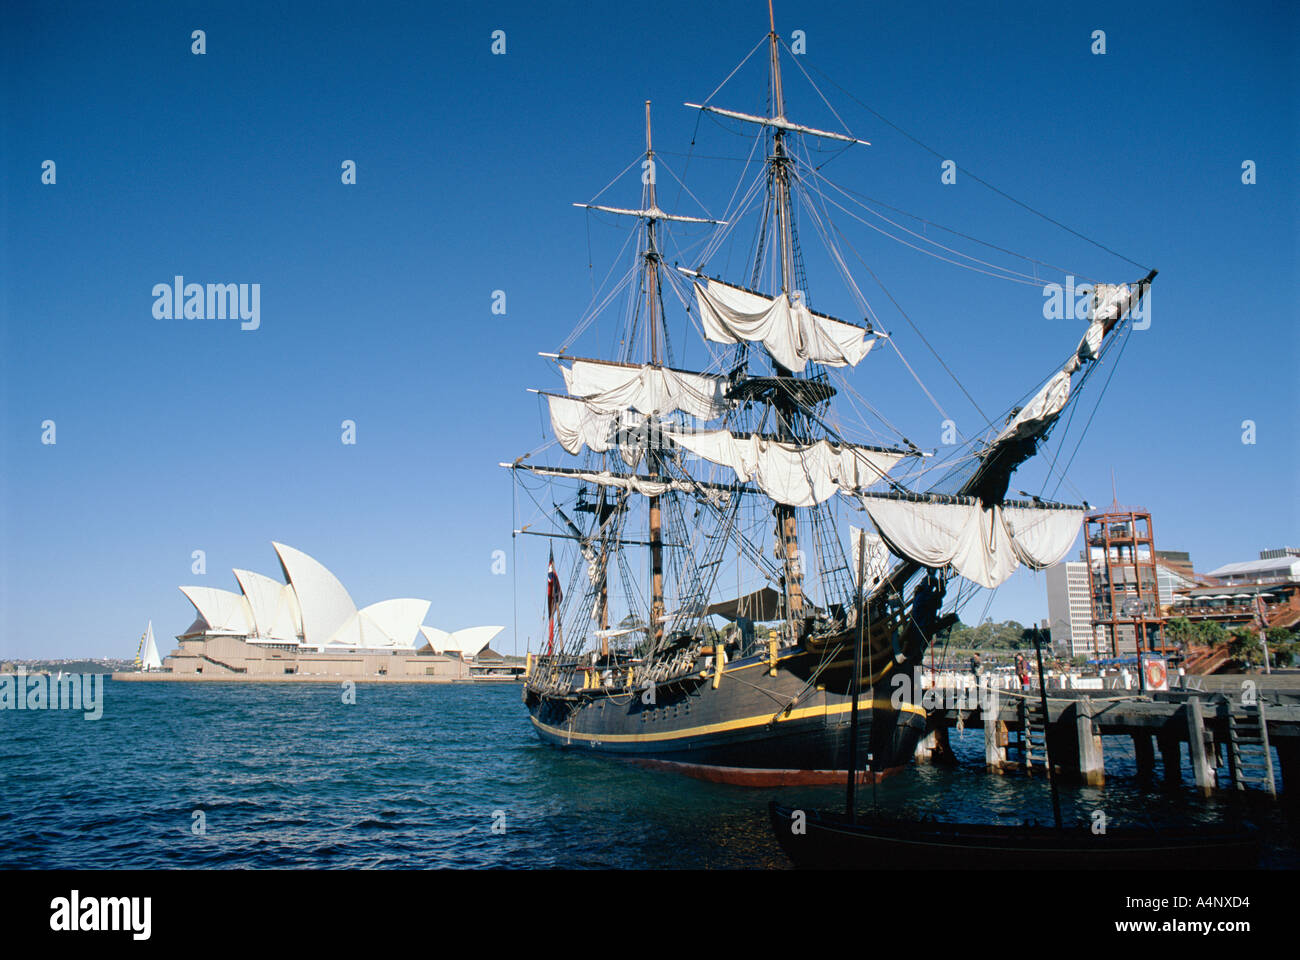 Réplique de H M S Bounty et Opéra de Sydney Sydney New South Wales N S W Australie Pacifique Banque D'Images